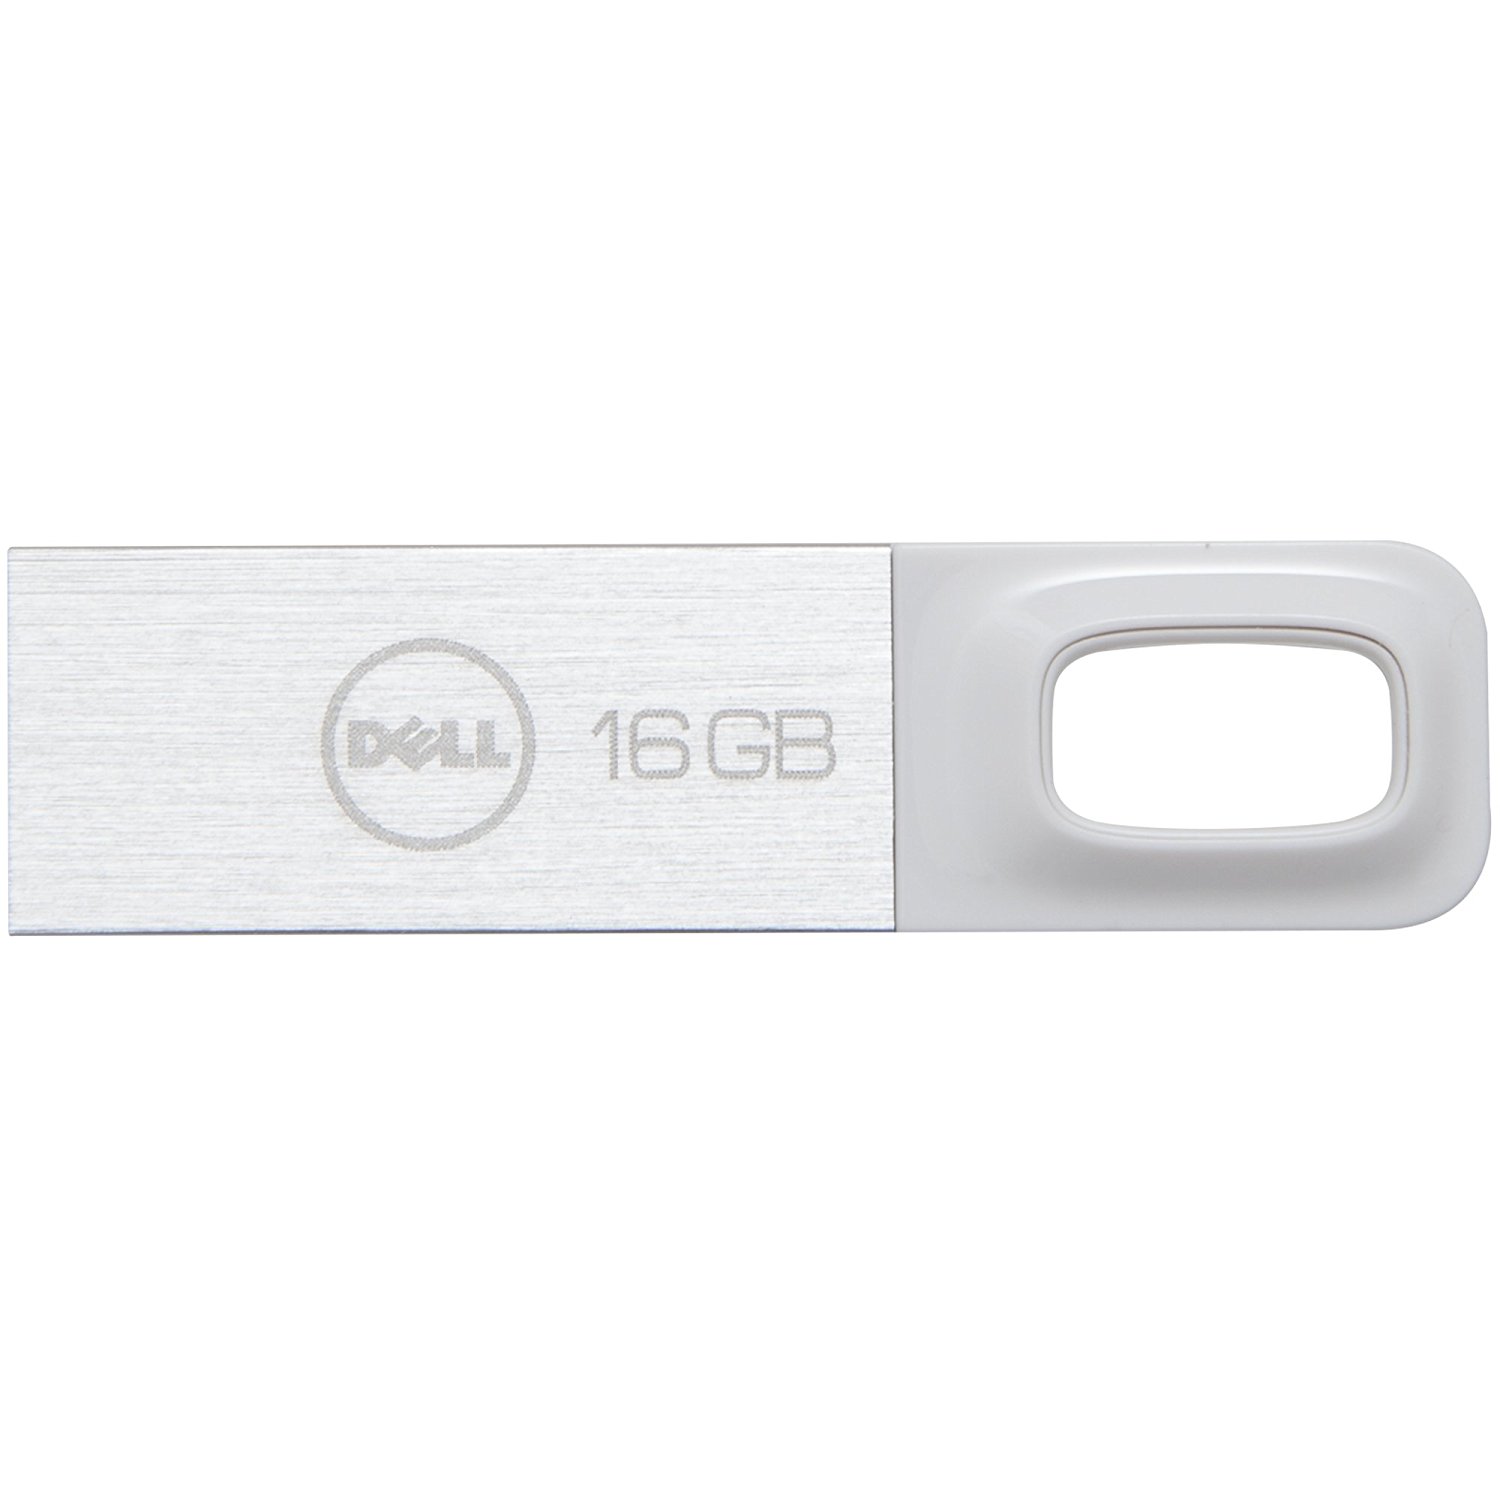 Dell Consumer - A8207442 - 16GB USB 2.0 Flash Drive Wht - image 1 of 2